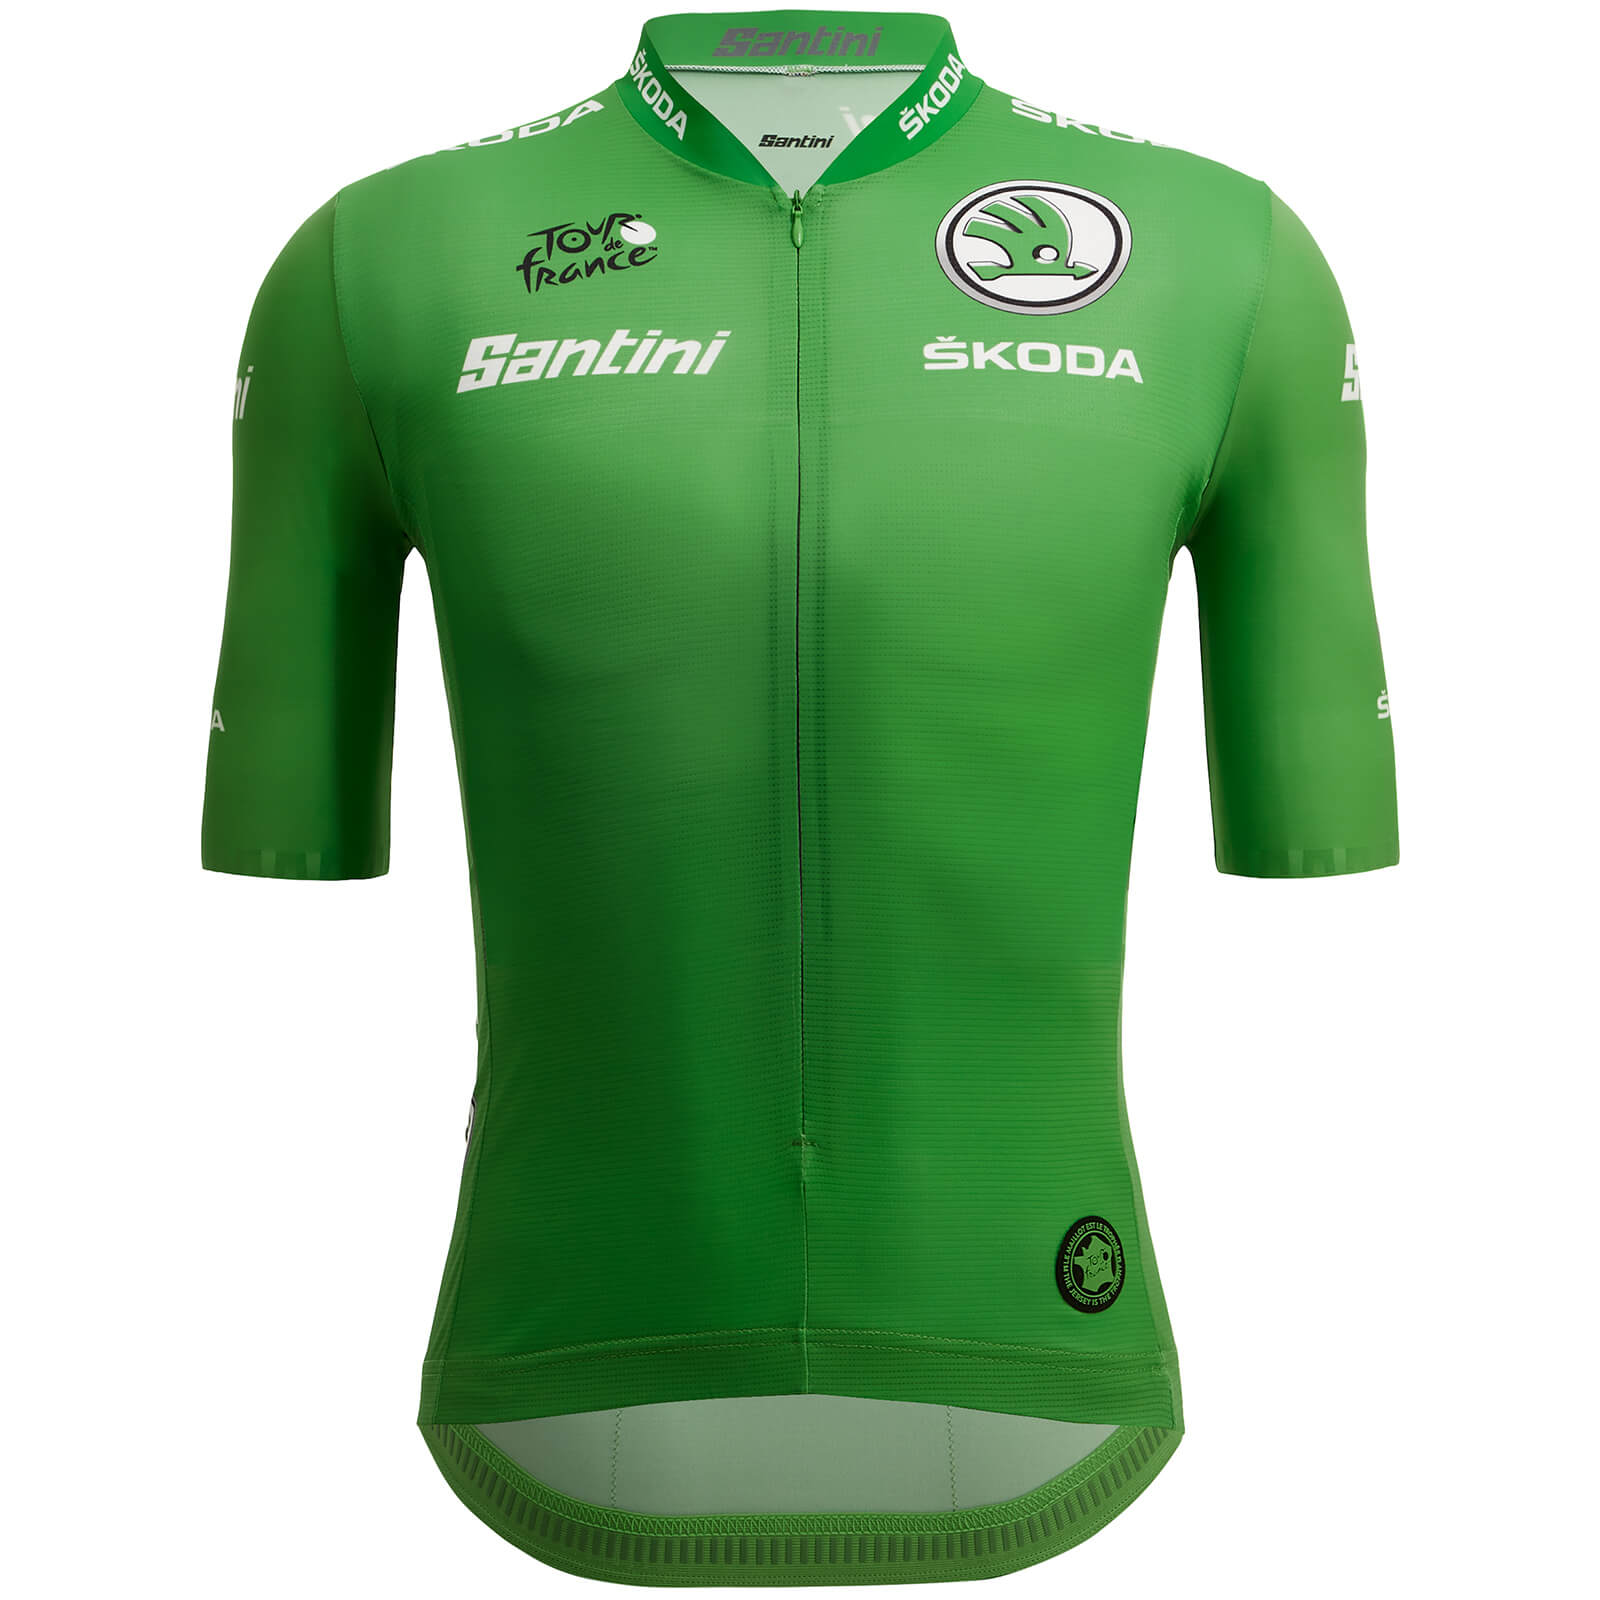 Santini Tour de France Sprinters Jersey - L